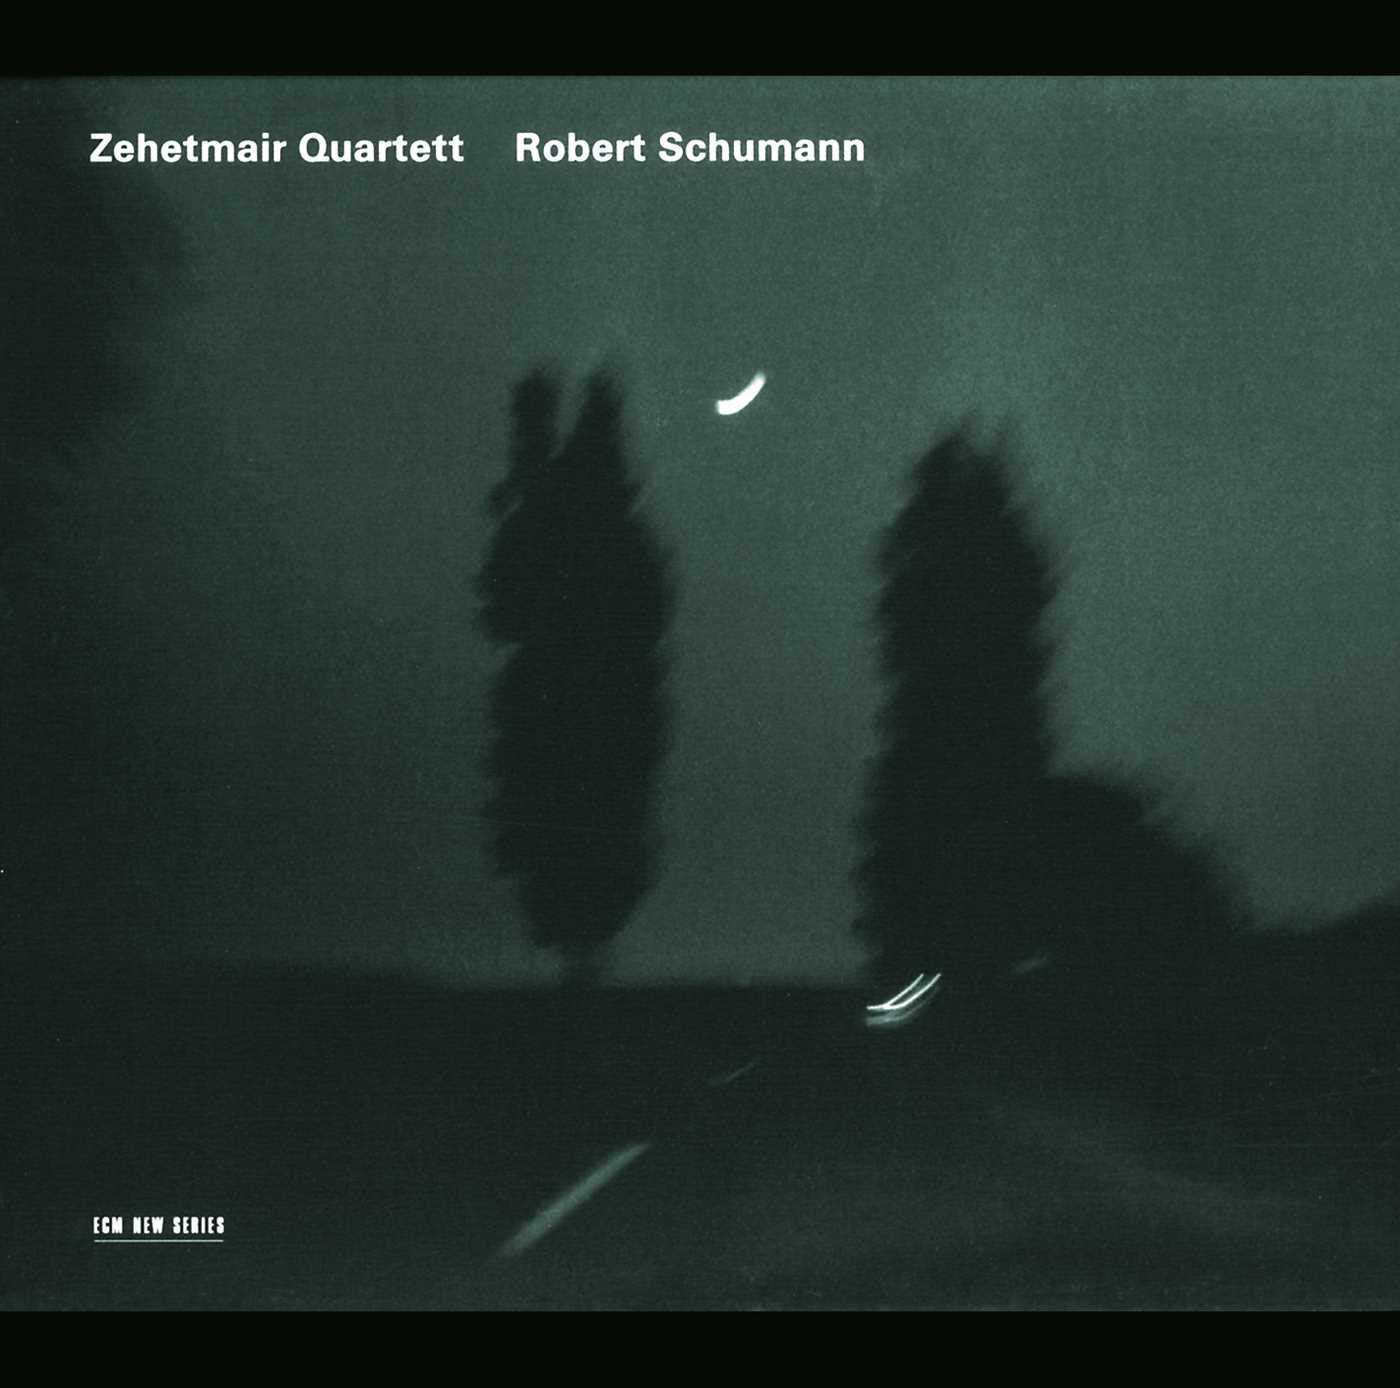 Zehetmair Quartett, Robert Schumann